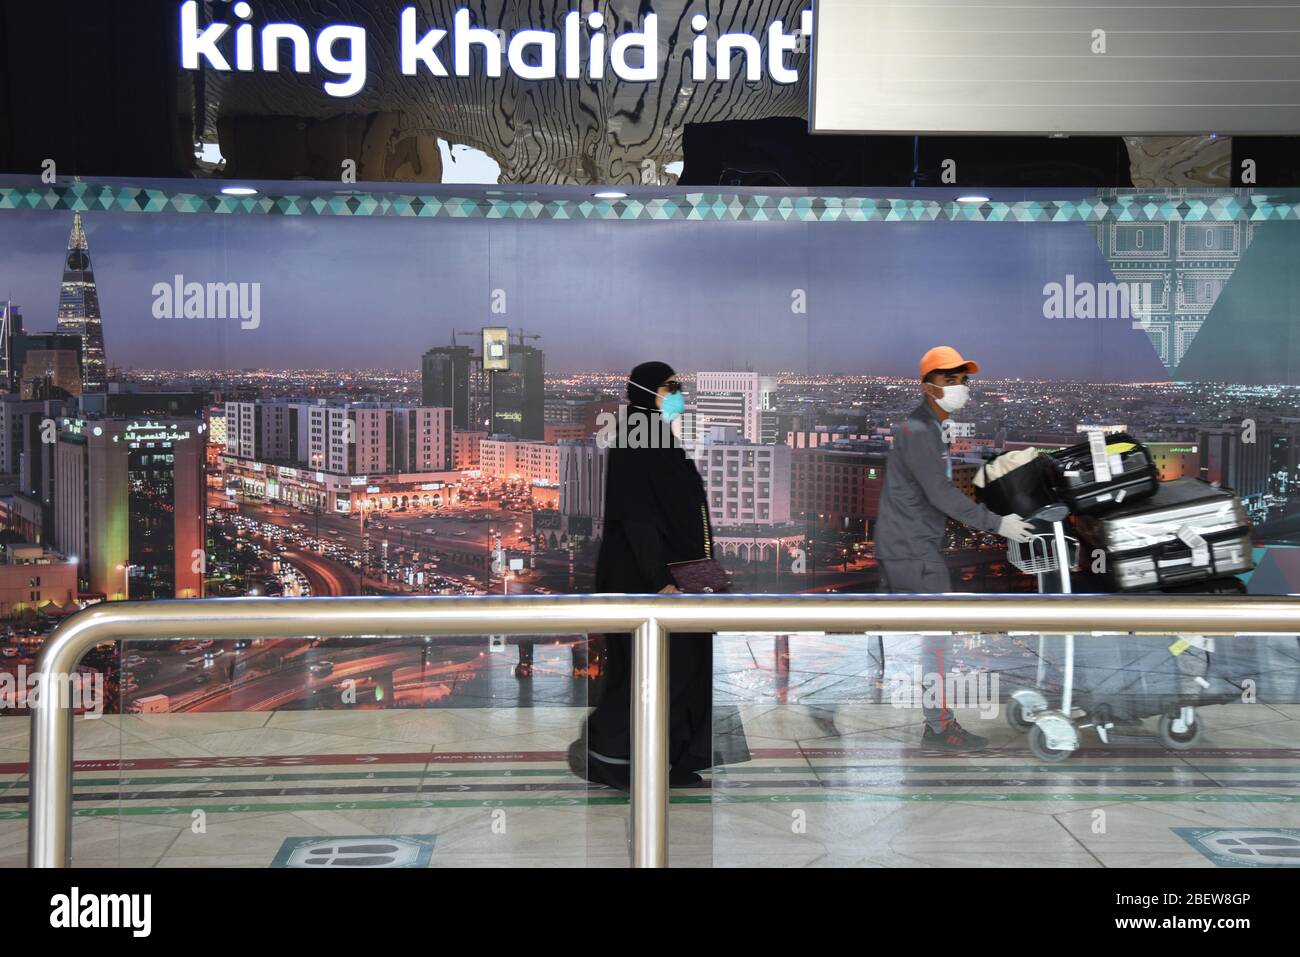 Riad, Saudi-Arabien. April 2020. Am 15. April 2020 gehen Menschen mit Gesichtsmasken auf dem King Khalid International Airport in Riad, Saudi-Arabien. Saudi-Arabien hat am Mittwoch die Registrierung von 493 neuen COVID-19-Fällen angekündigt, womit die Gesamtzahl auf 5,862 Fälle angesetzt wurde. Quelle: Tu Yifan/Xinhua/Alamy Live News Stockfoto